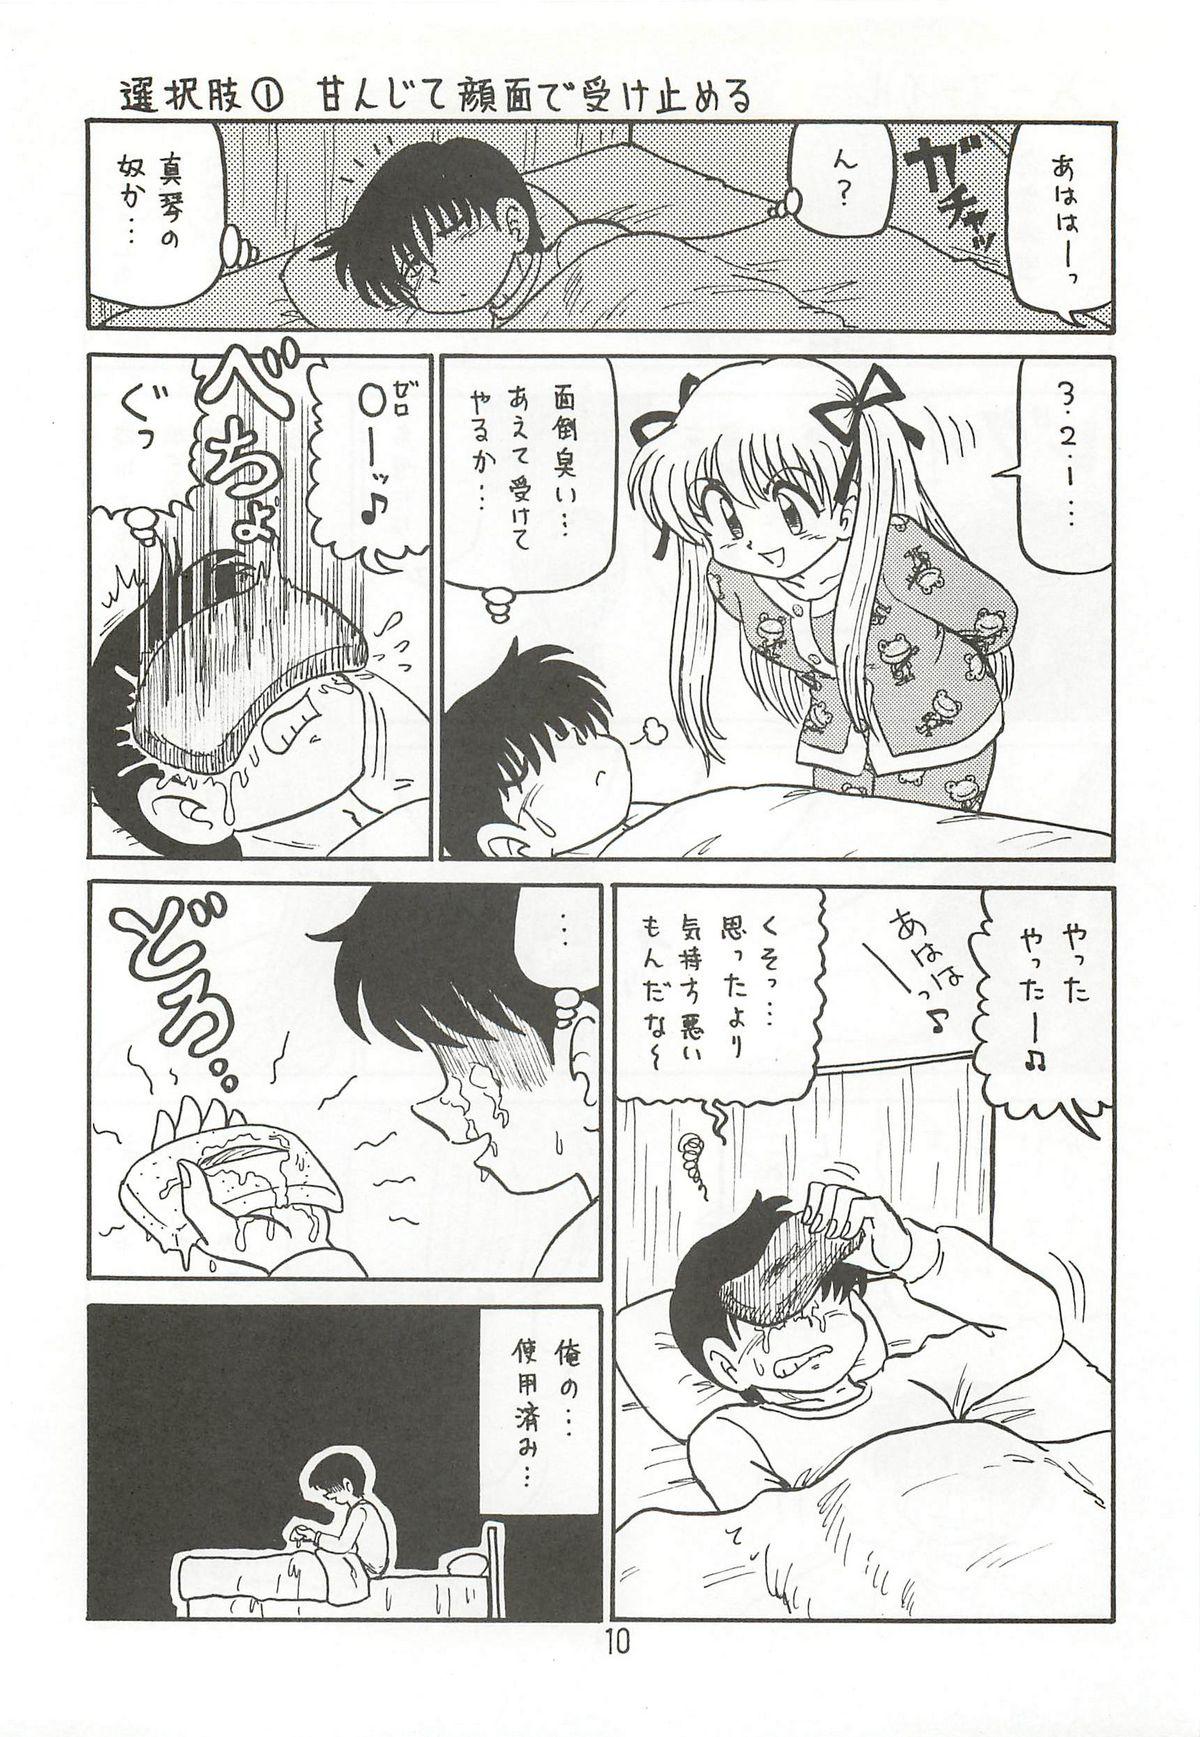 Sesso Ayu to Makoto zoukyoukaiteiban - Kanon Nalgas - Page 9